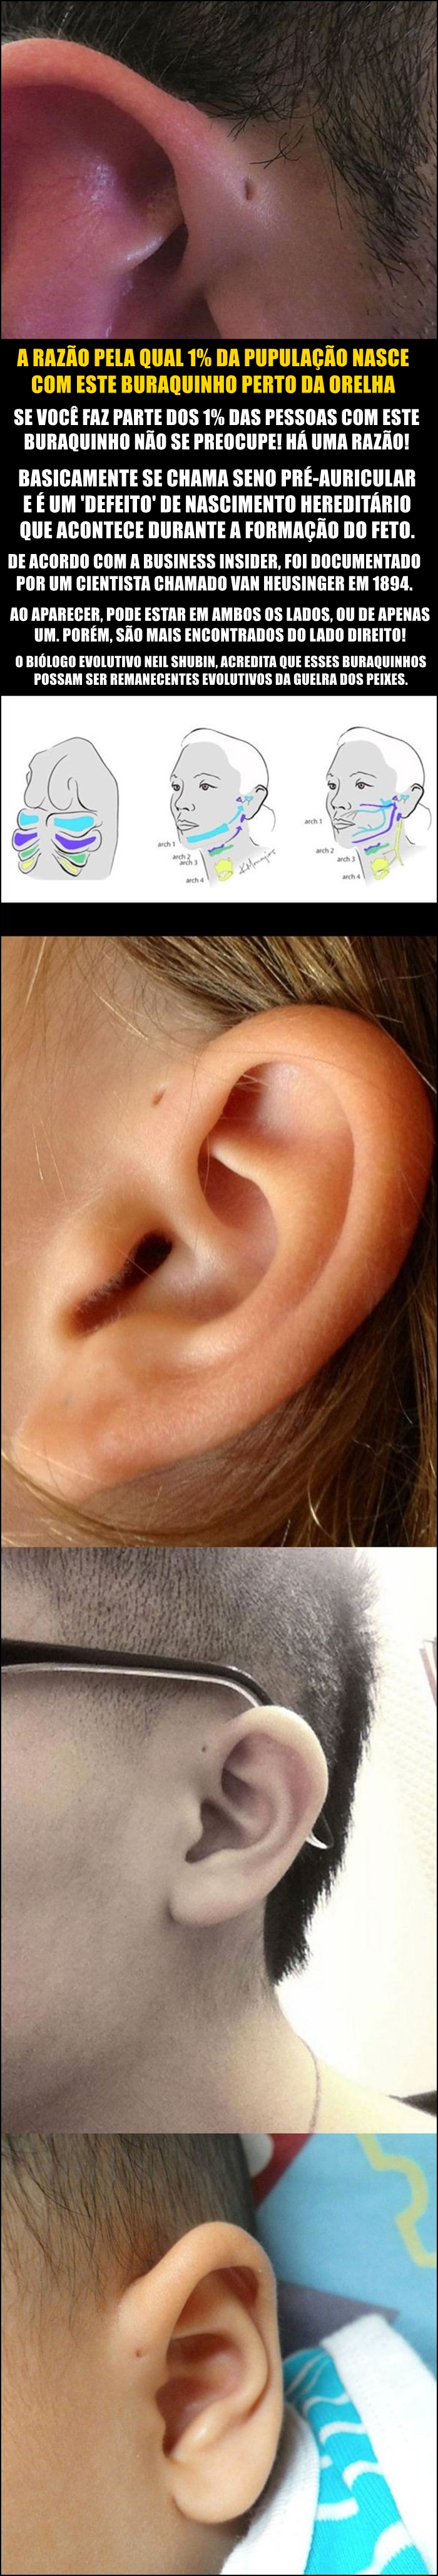 Curiosidade: Você tem aquele buraquinho perto da orelha?